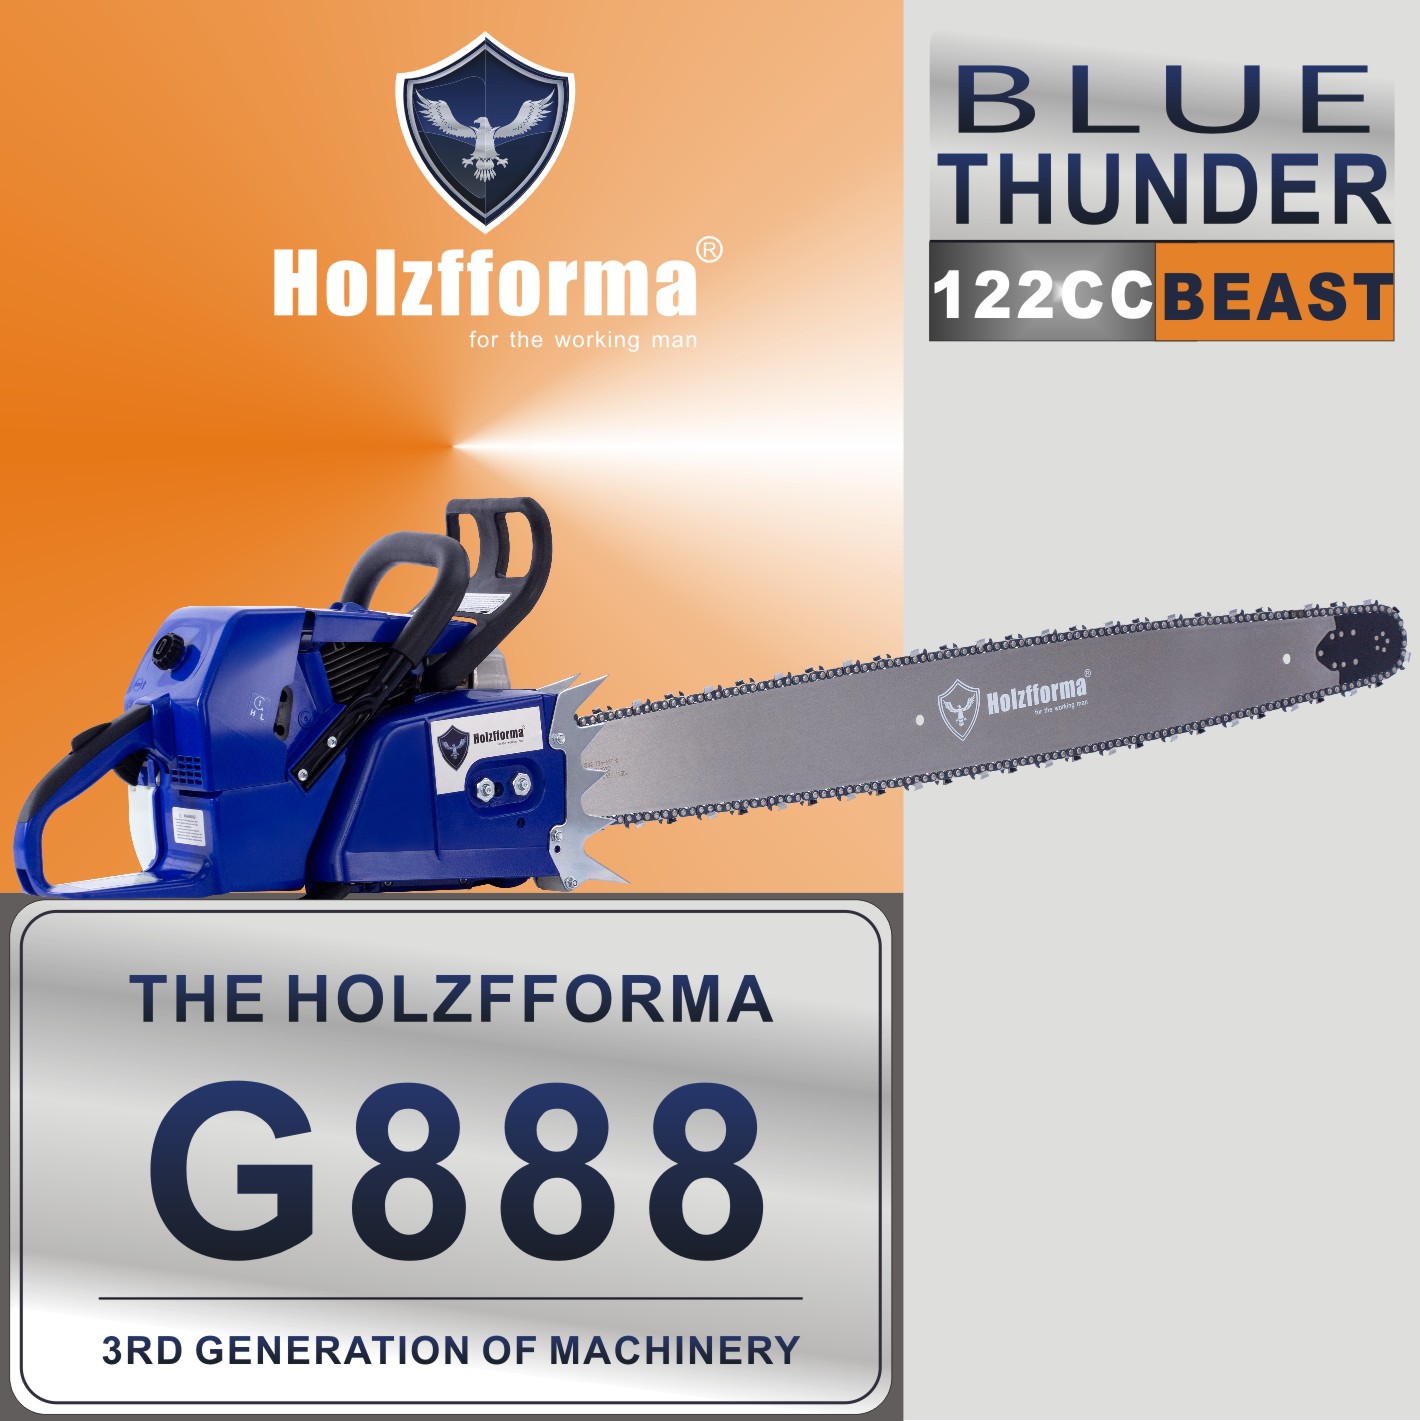 Tronçonneuse Holzfforma G888 122cc guide de 60 à 105cm de coupe